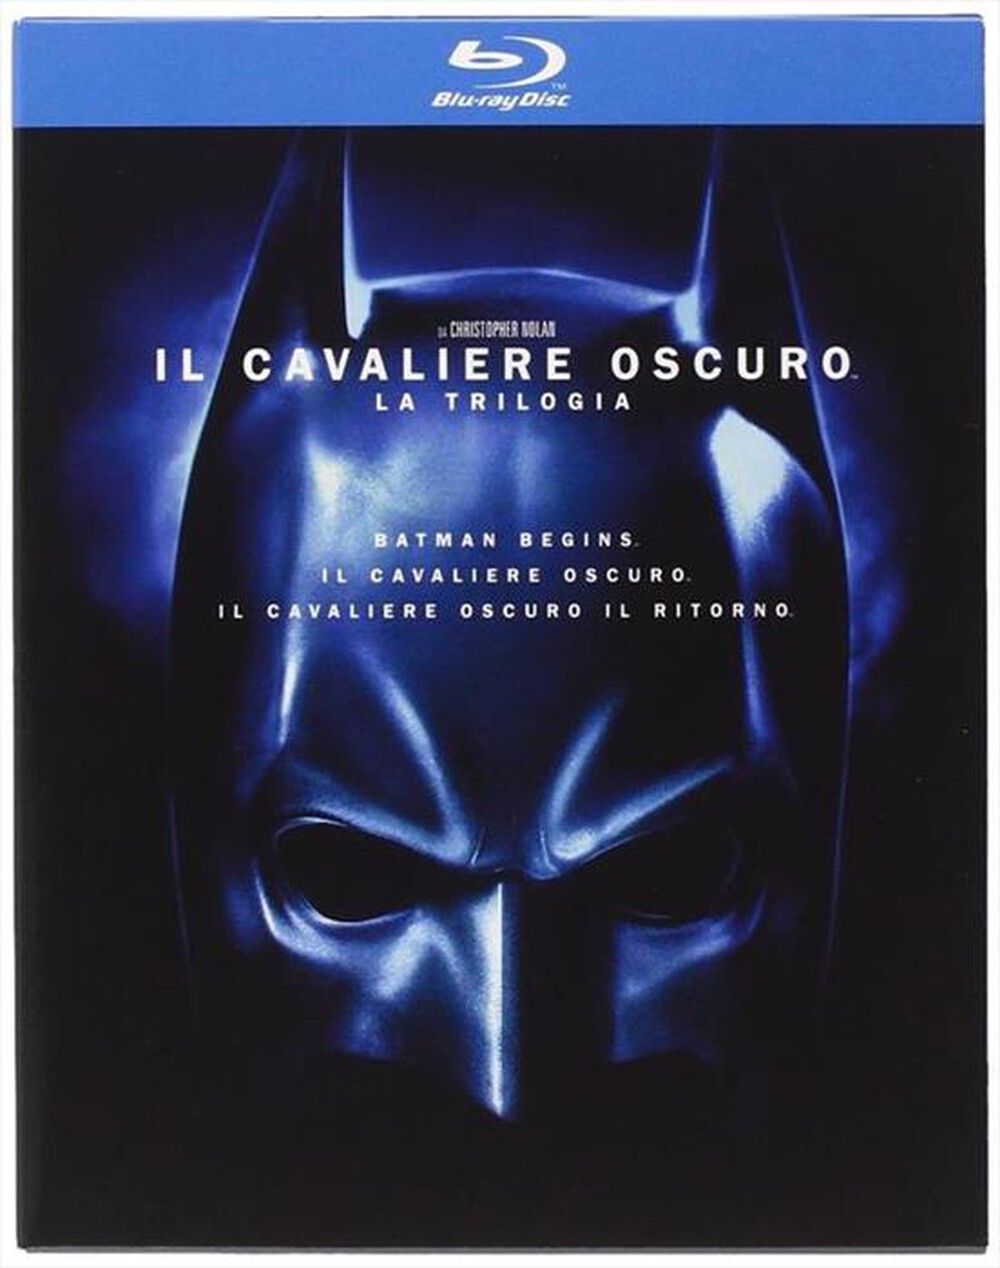 "WARNER HOME VIDEO - Cavaliere Oscuro (Il) - Trilogia (5 Blu-Ray)"